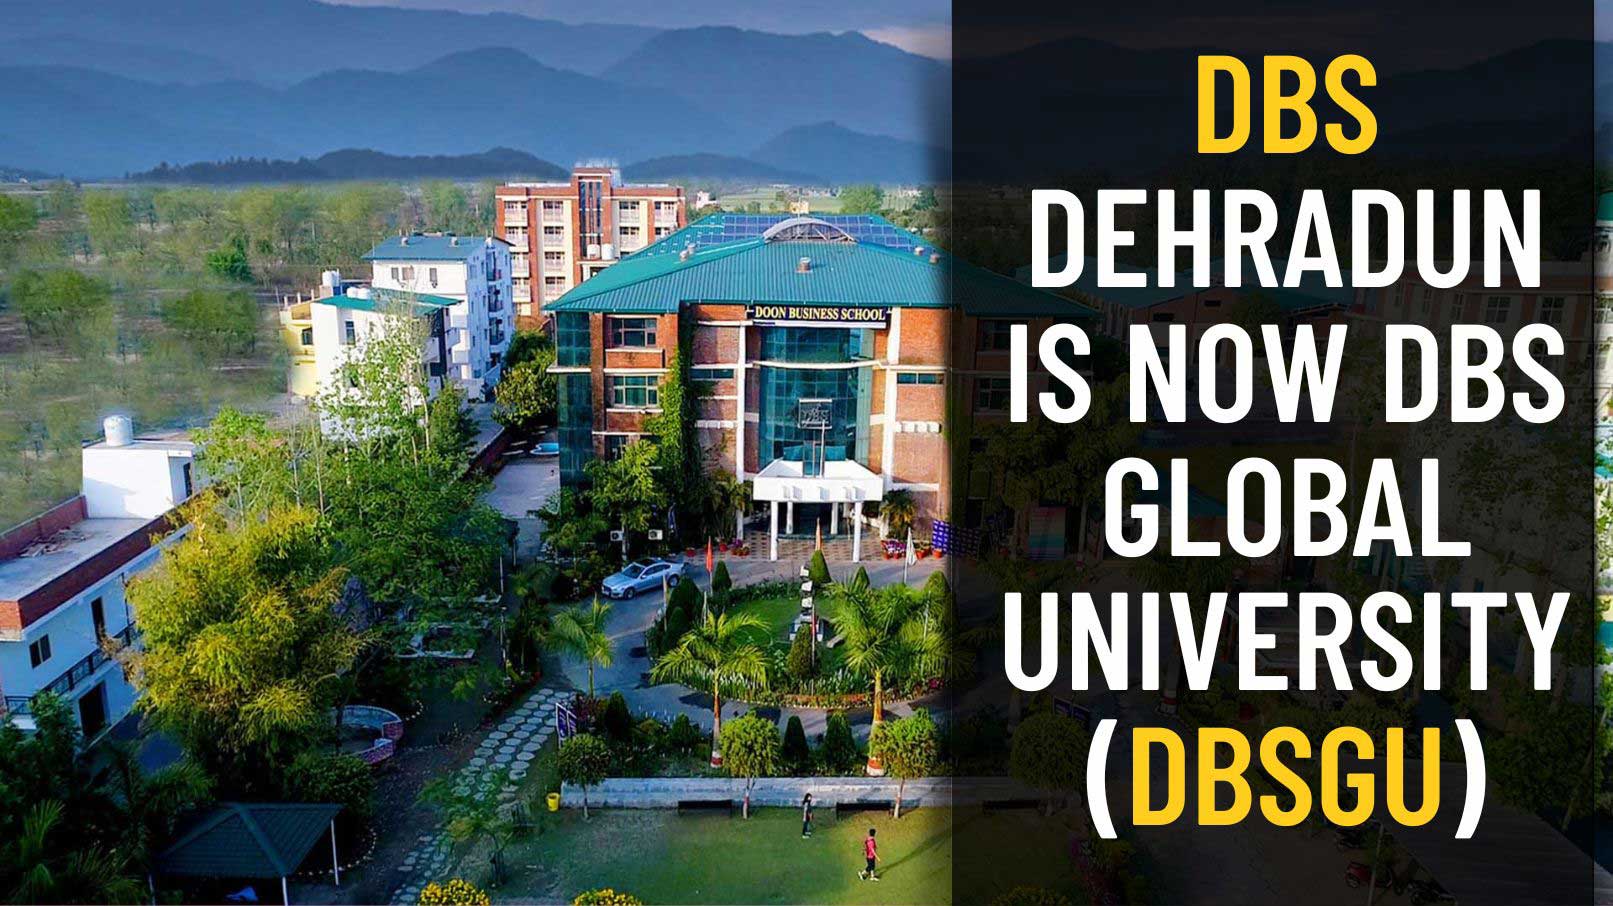 DBS Dehradun is now DBS Global University(DBSGU)